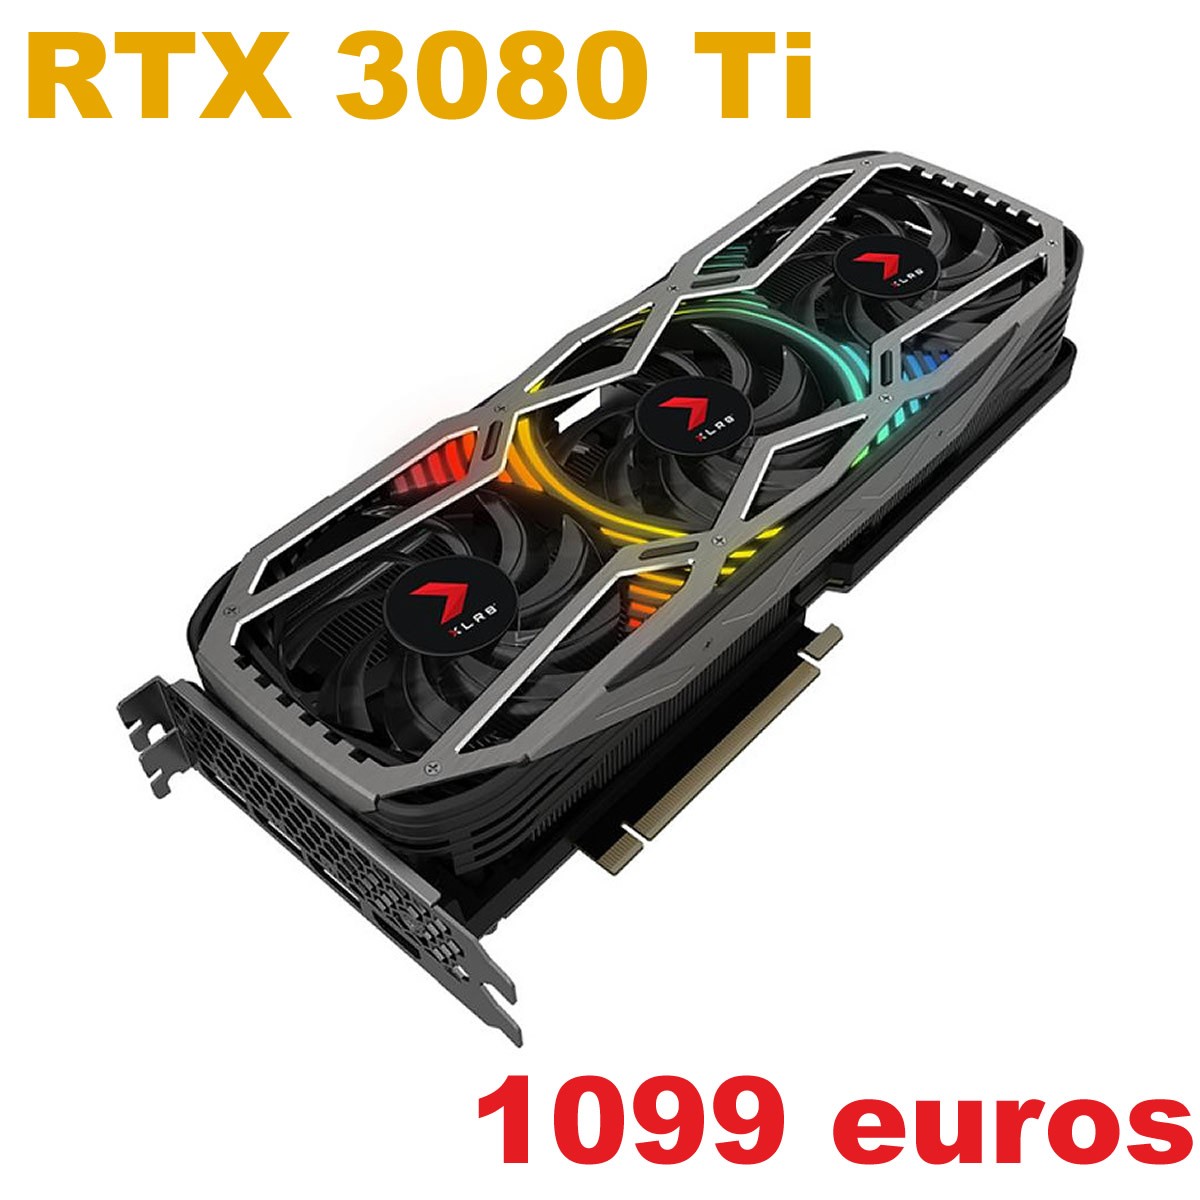 [MAJ] Il y a toujours de bonne grosse RTX 3080 Ti Custom disponible à 1099 euros